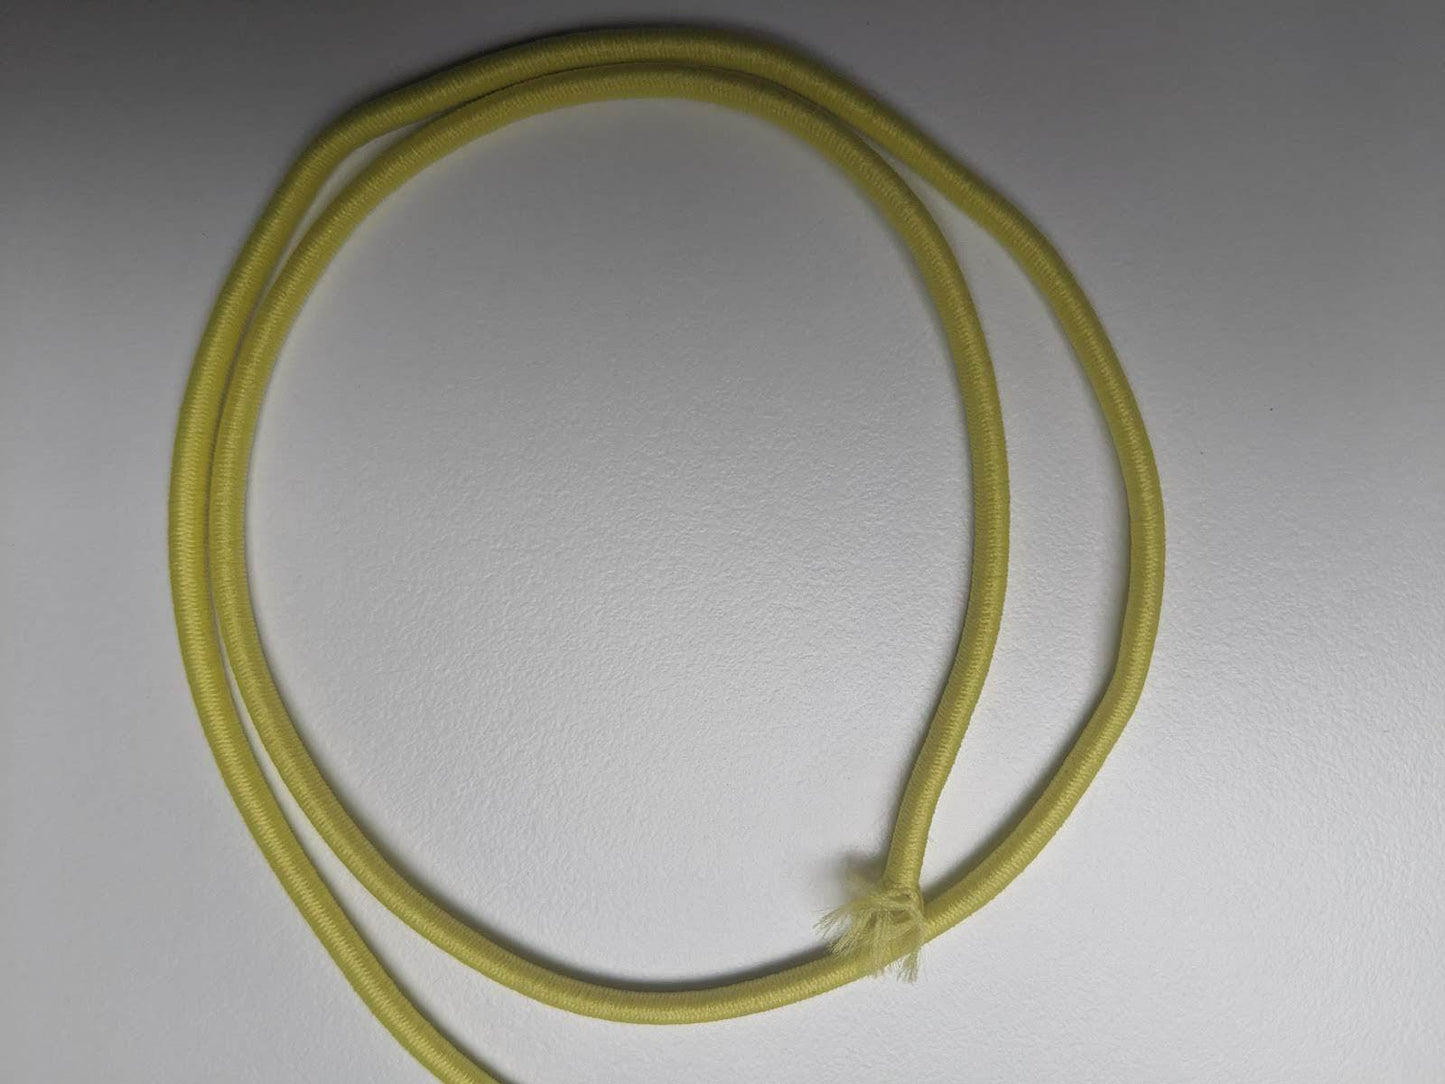 Cord elastic 3mm yellow - per meter